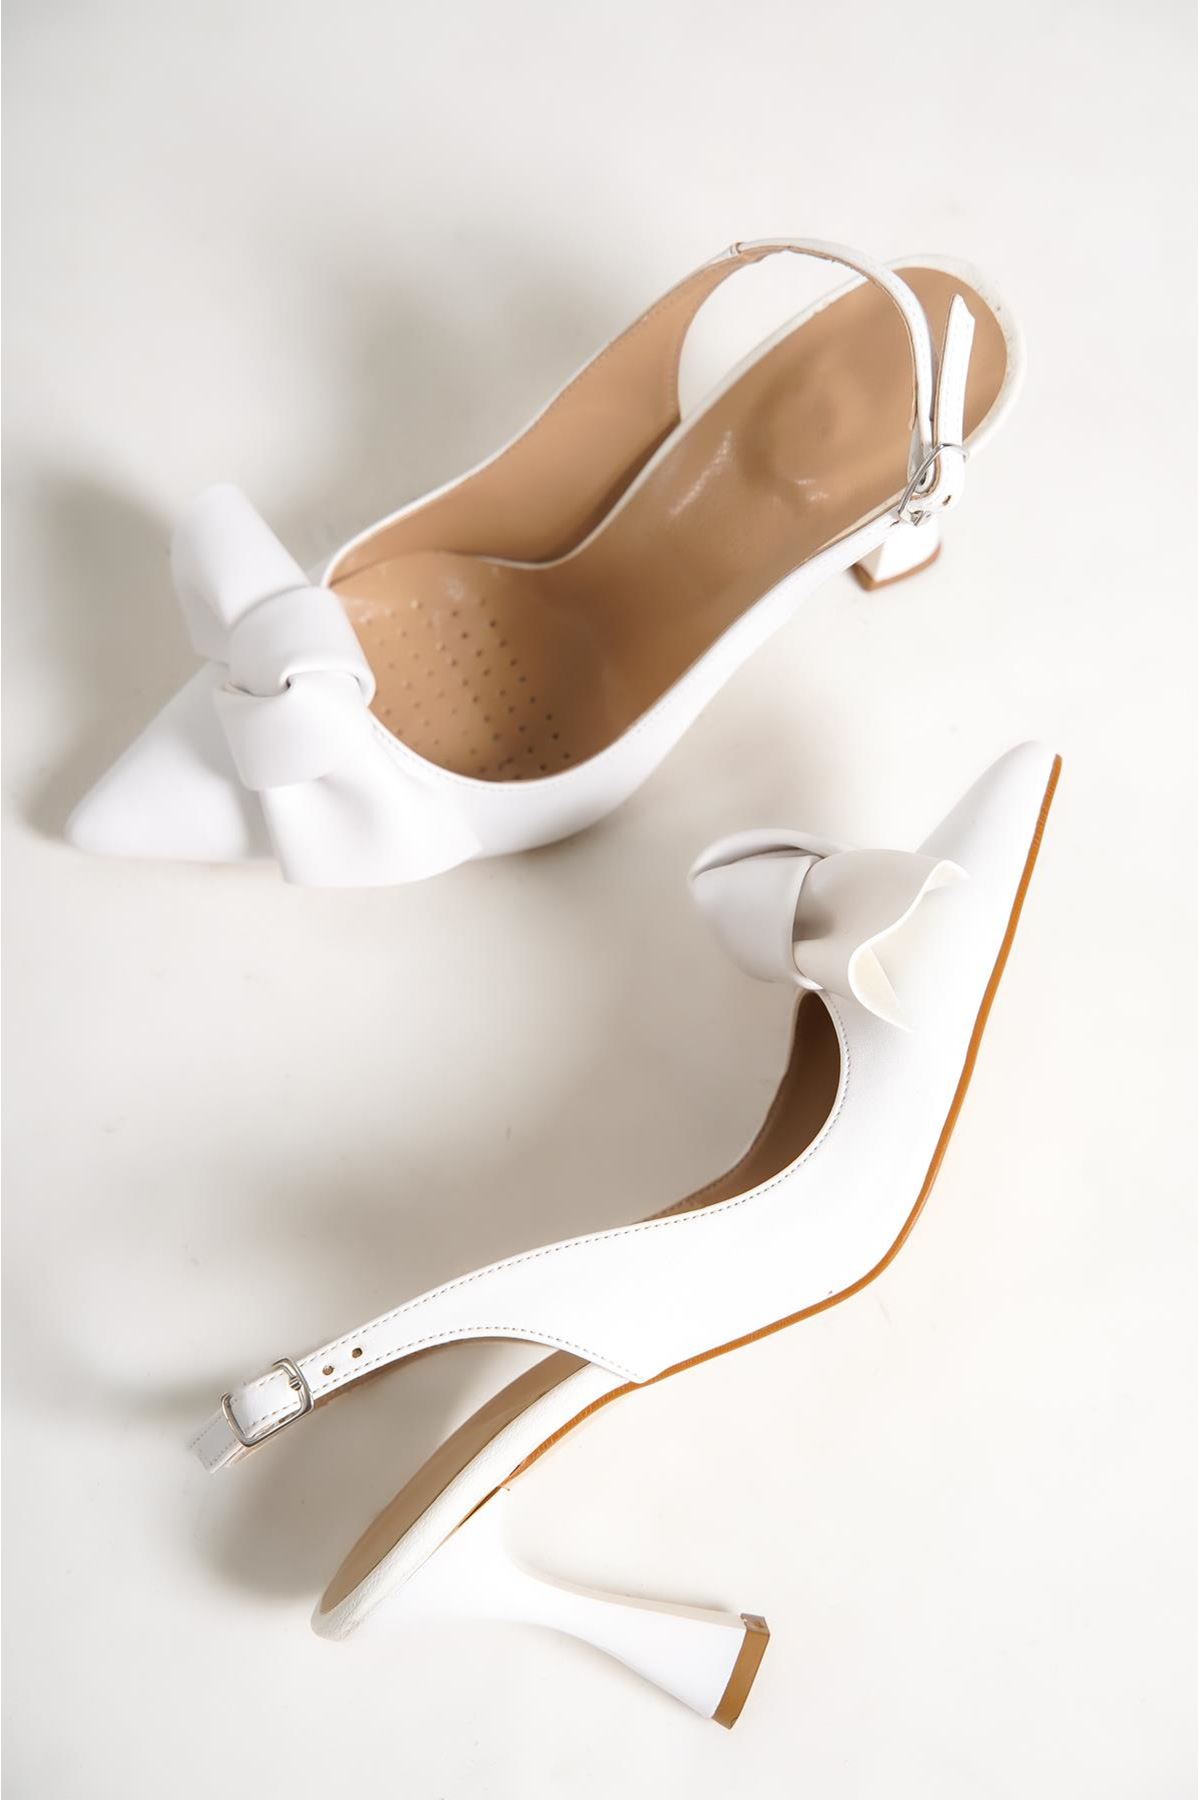 Chiara Kadın Topuklu Ayakkabı Beyaz Fiyonk